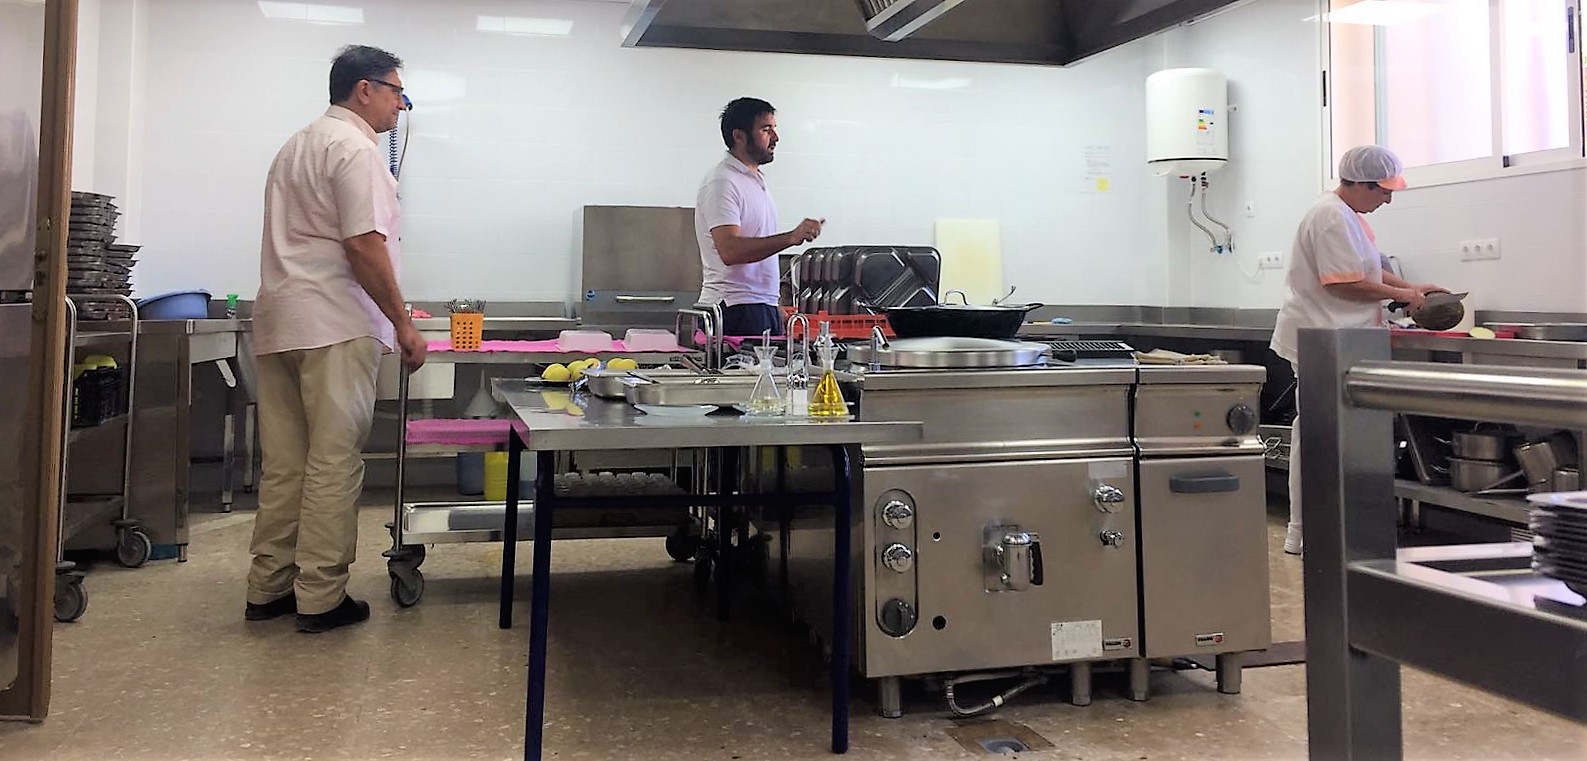 S’inaugura la nova cuina escolar al CEIP José Mollà